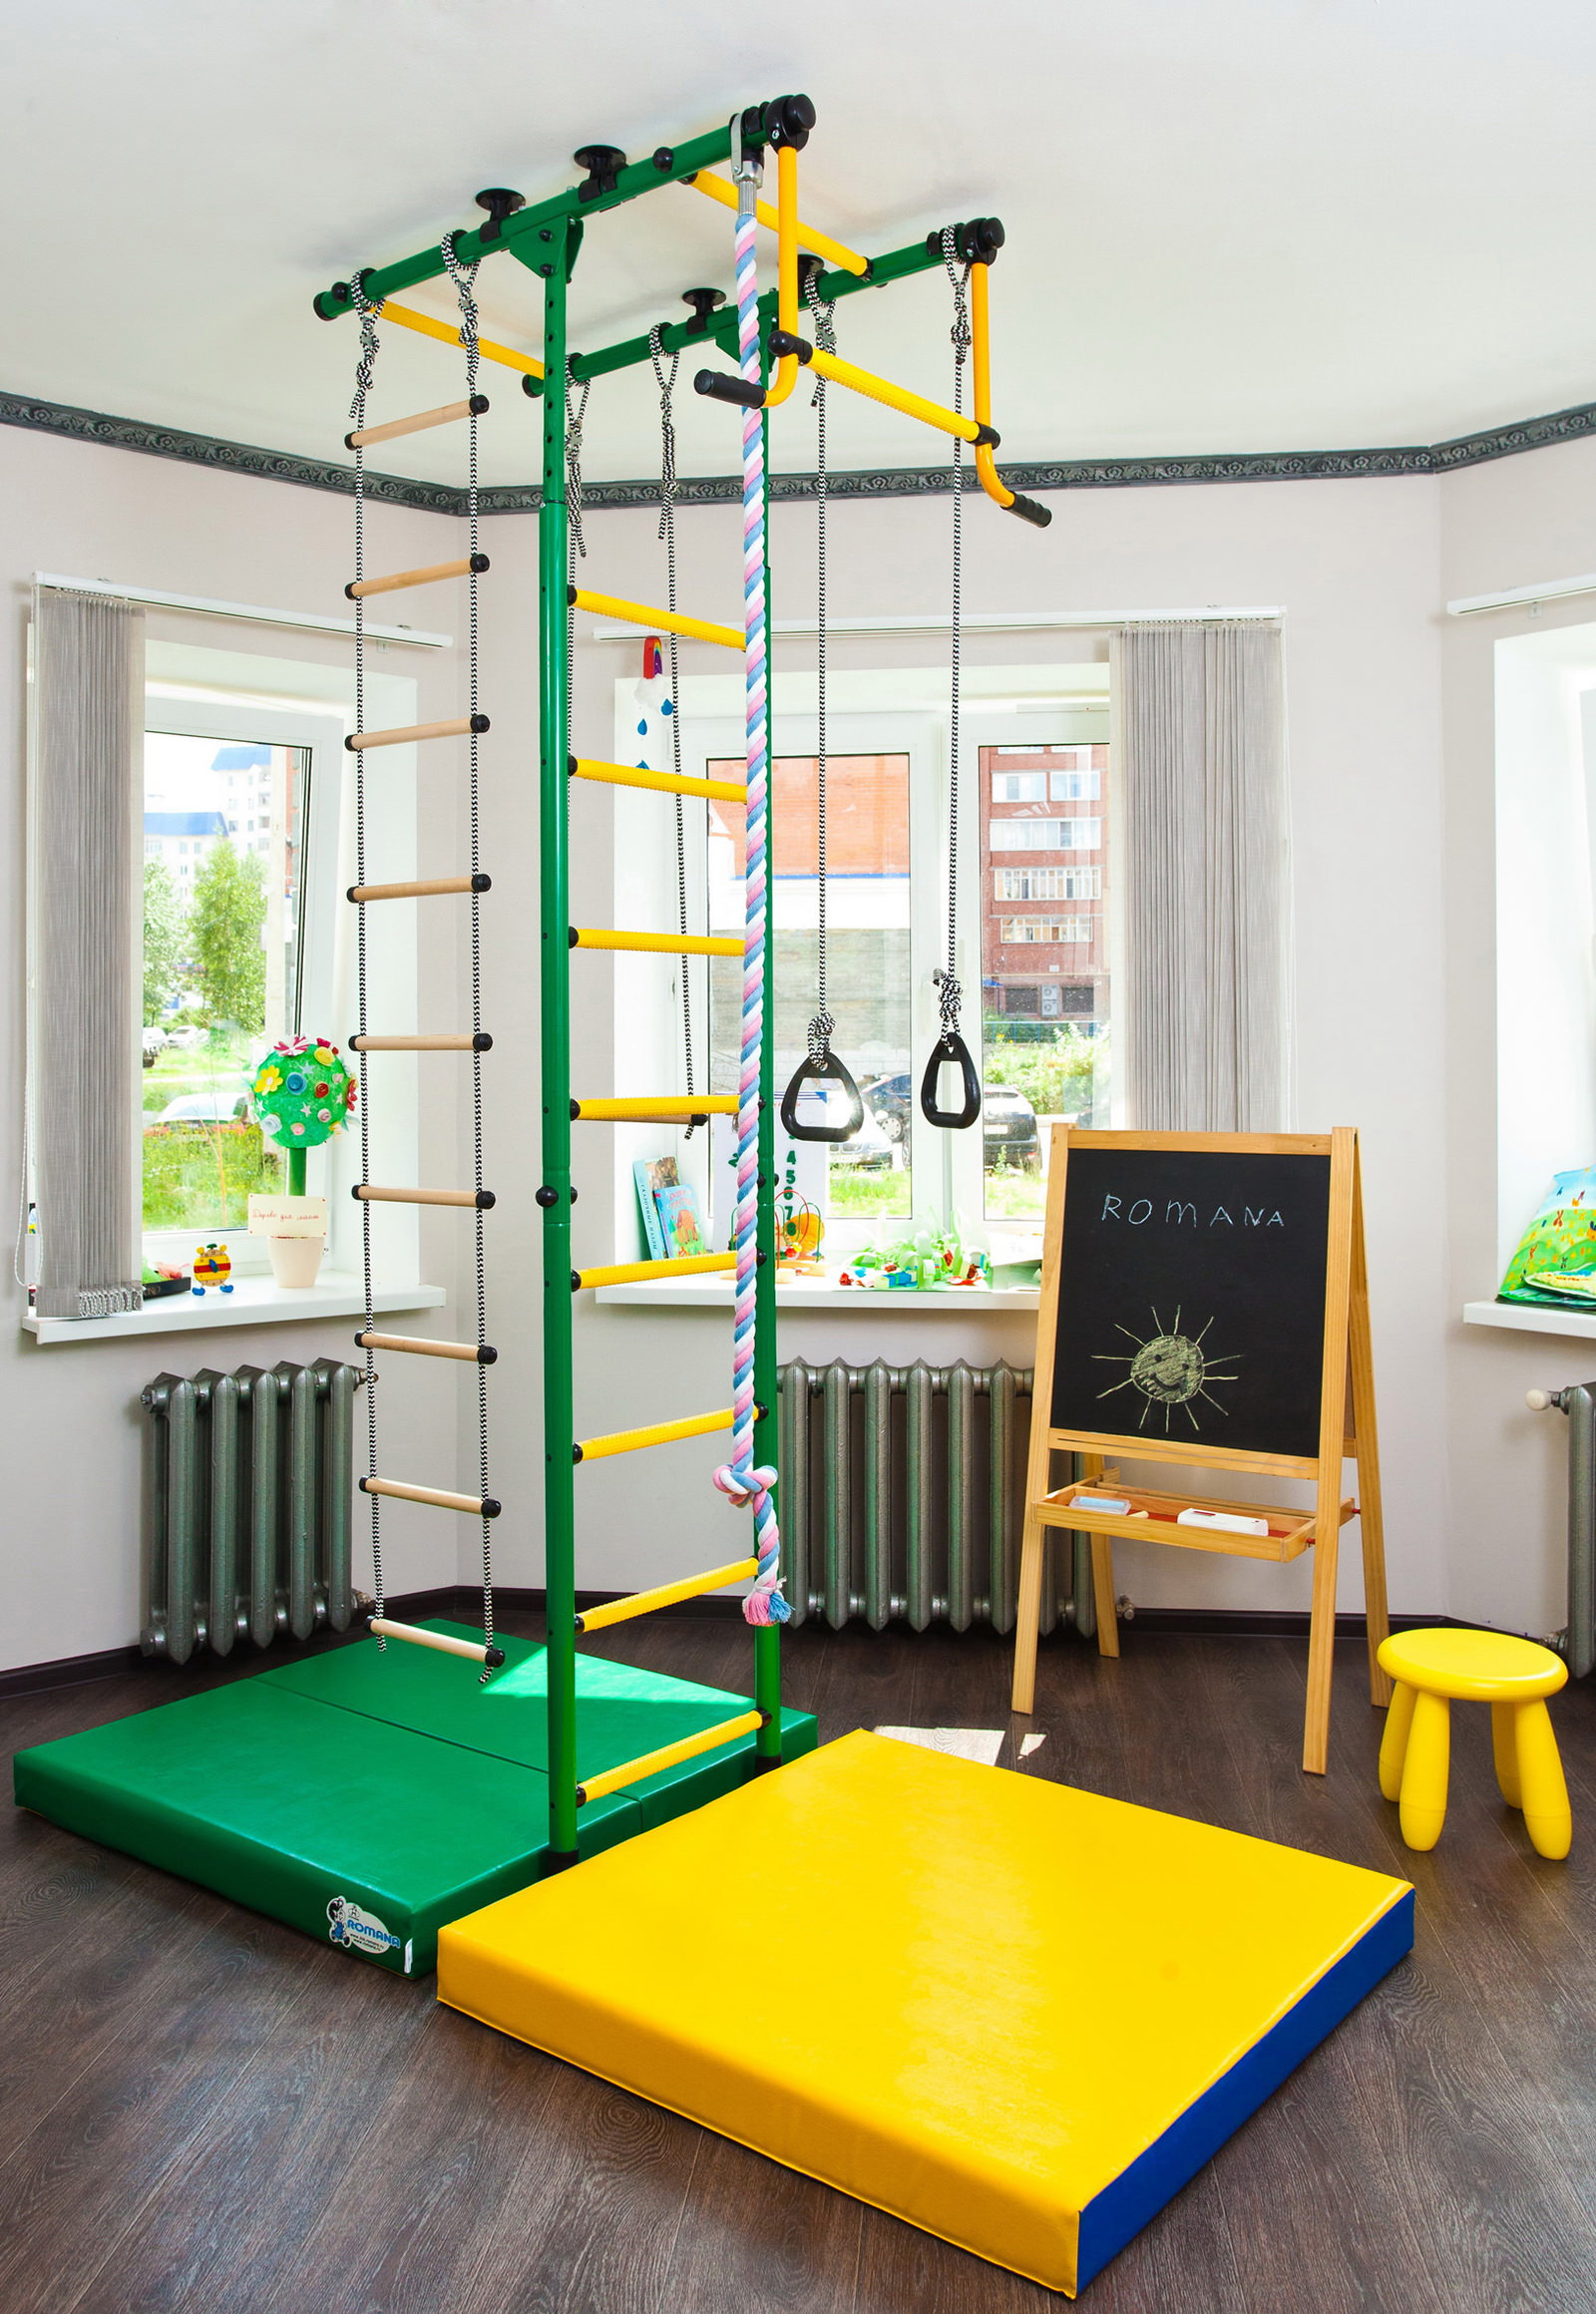 Шведская стенка в интерьере детской комнаты. Фото 12